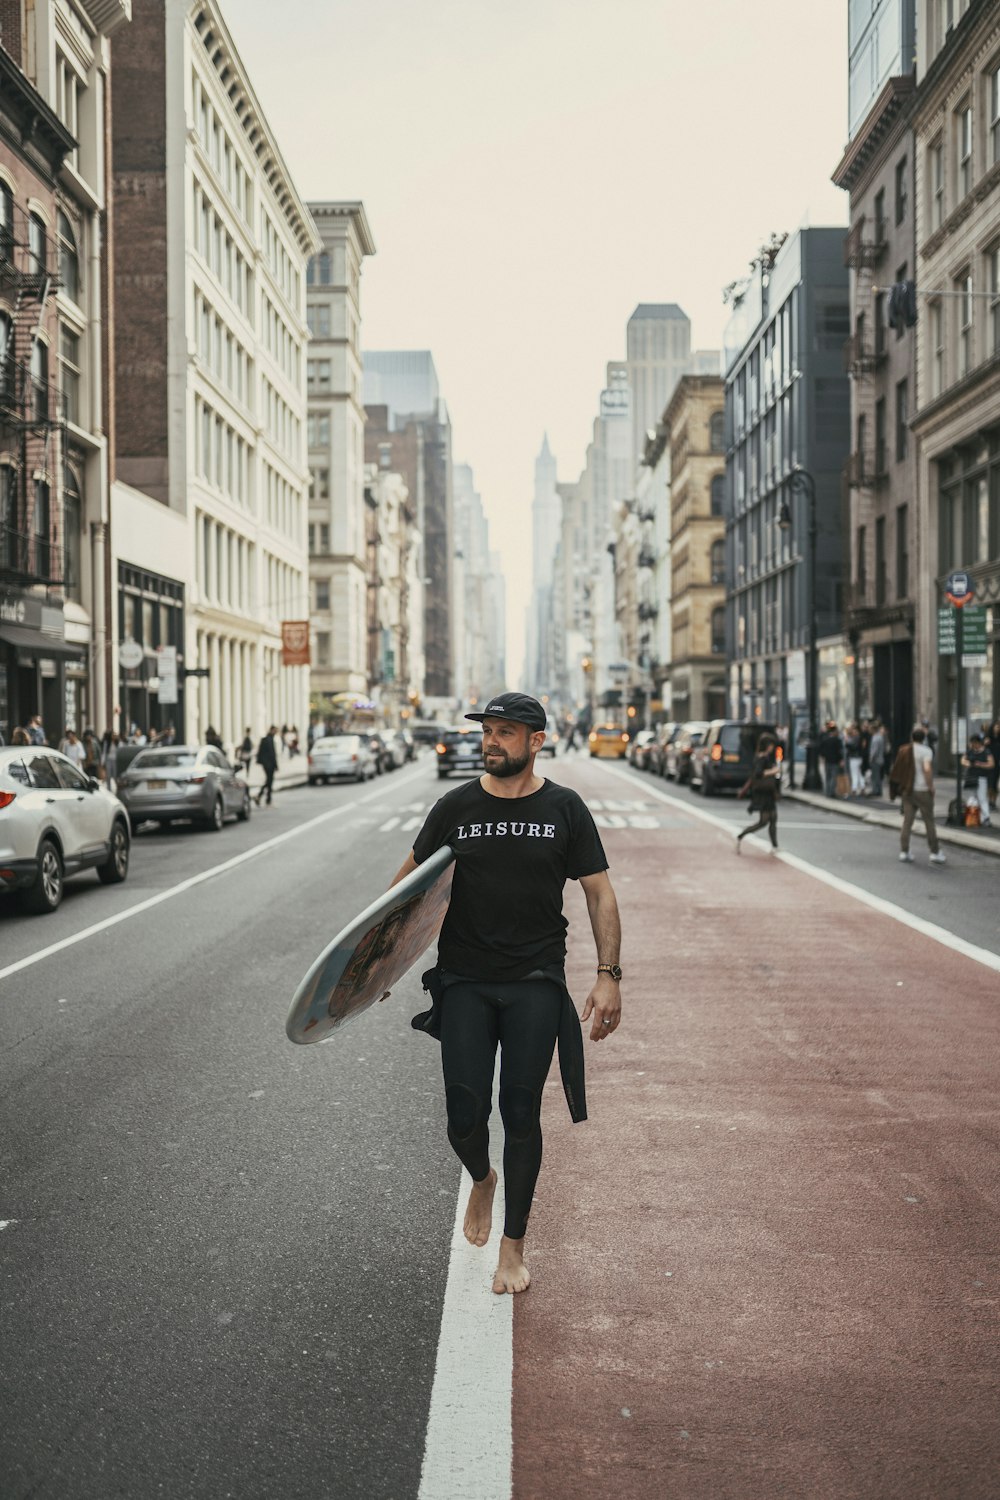 Un uomo che cammina lungo una strada con una tavola da surf